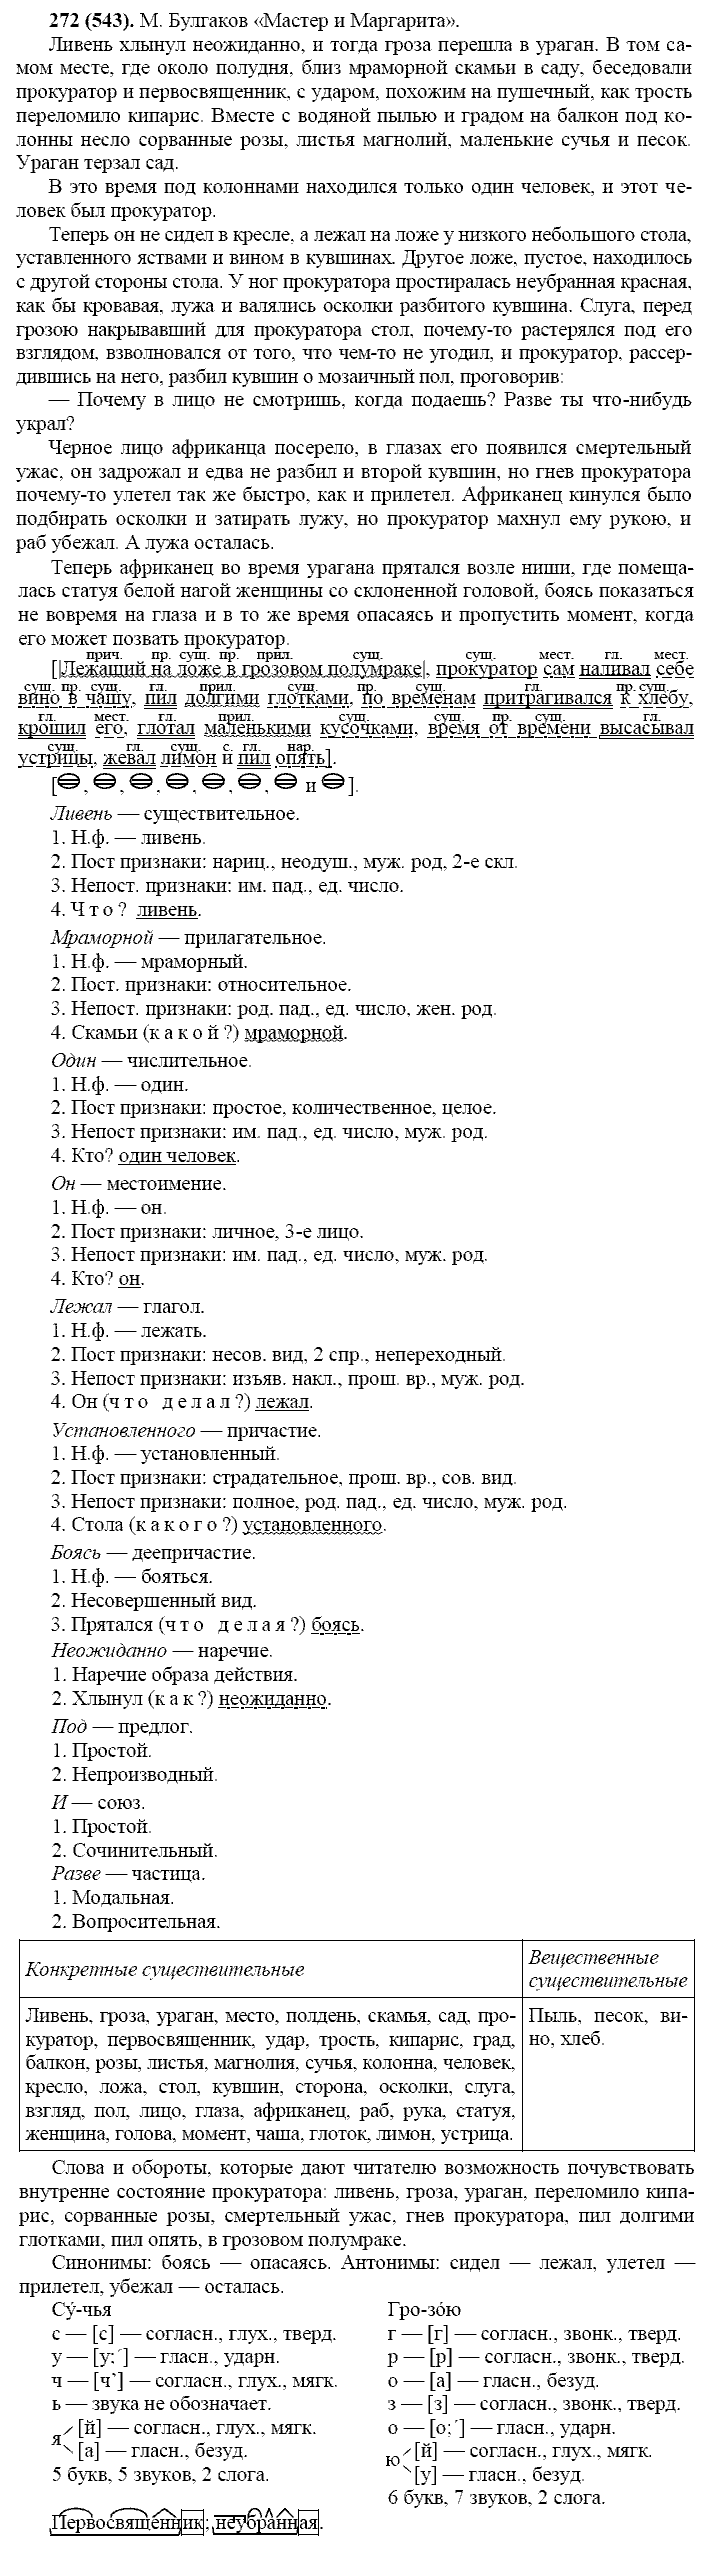 Русский язык, 11 класс, Власенков, Рыбченков, 2009-2014, задание: 272 (543)